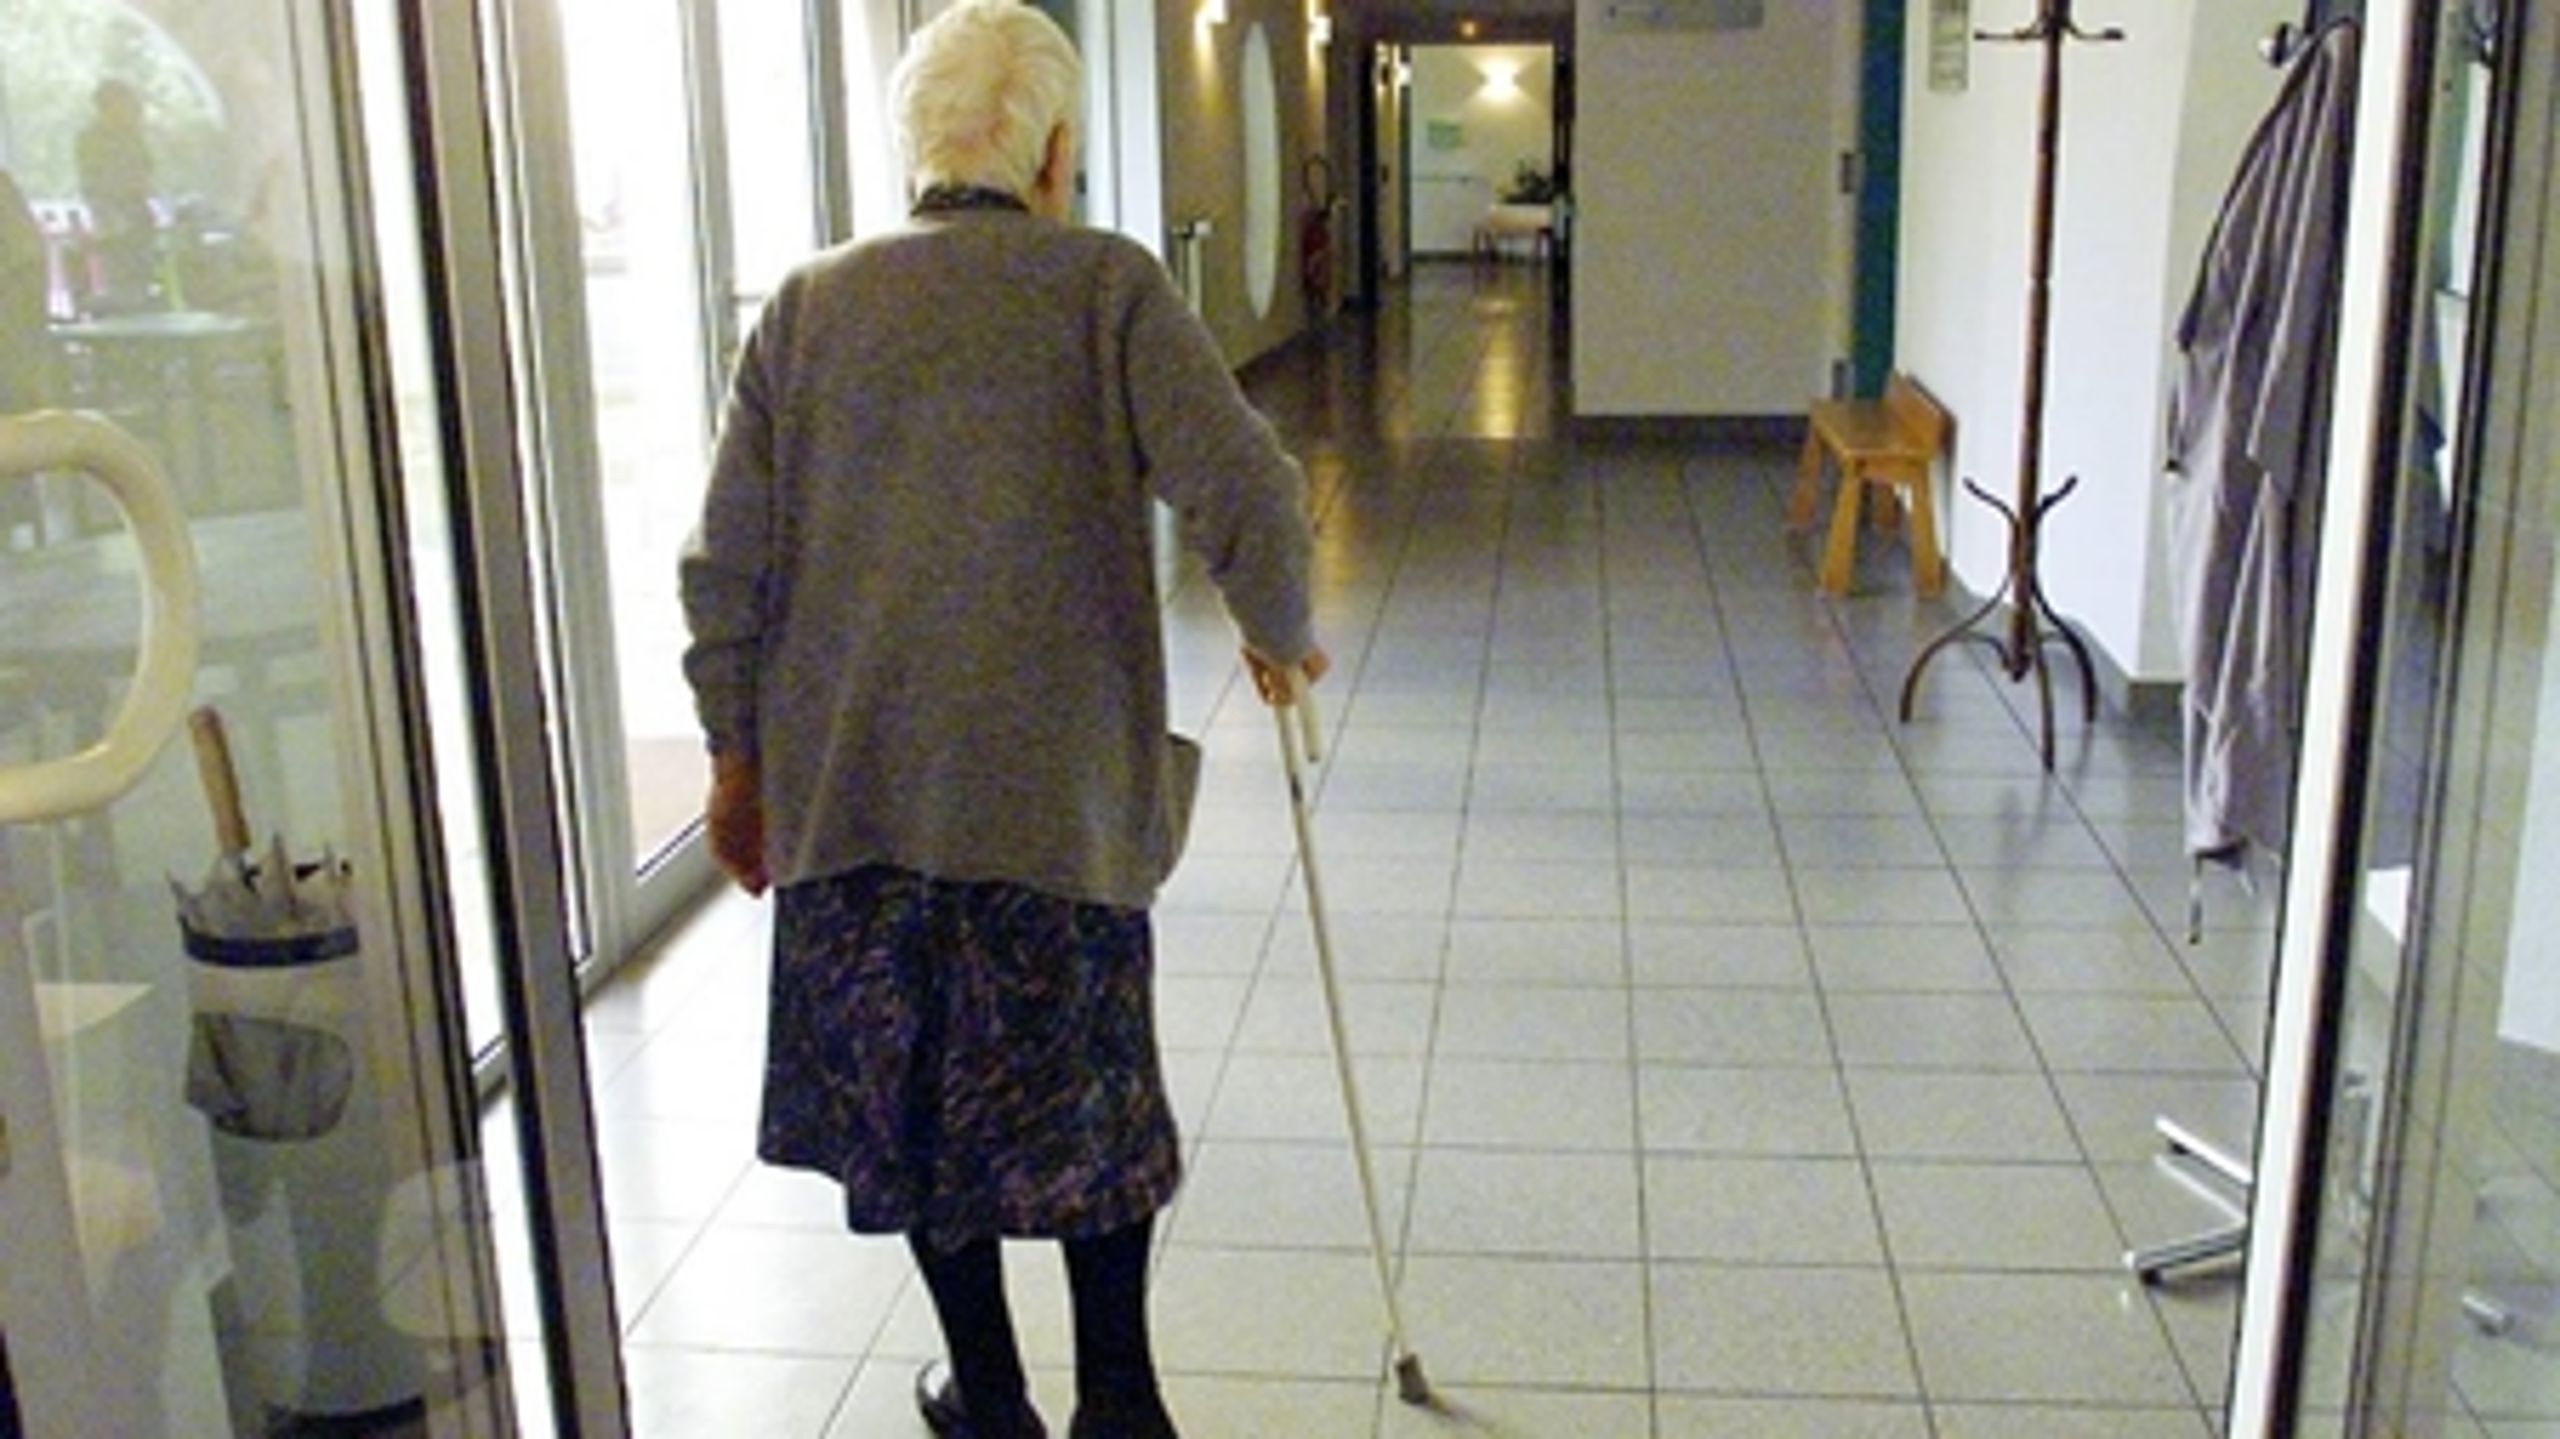 Plejecentre i kommunernes yderområder kan give de ældre en livskvalitet, der er svær at måle på, mener borgmester.